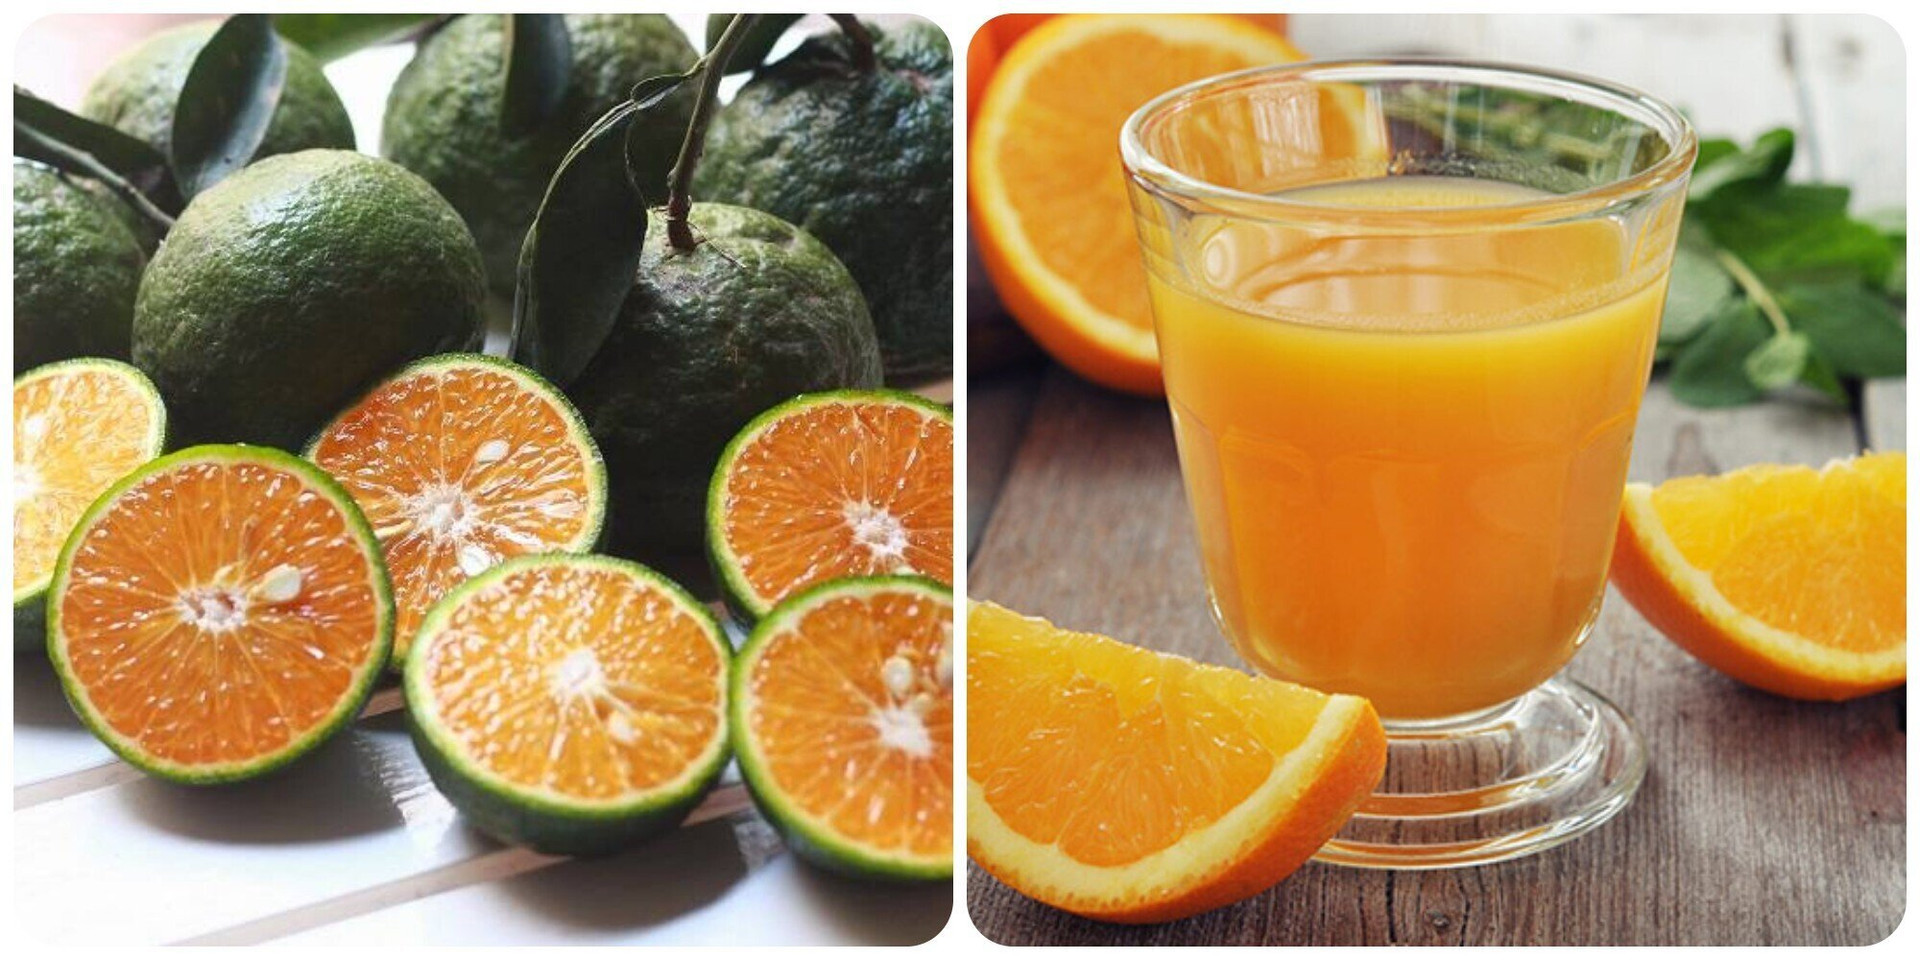 Nước cam rất tốt cho sức khoẻ nhưng chỉ nên uống vừa đủ